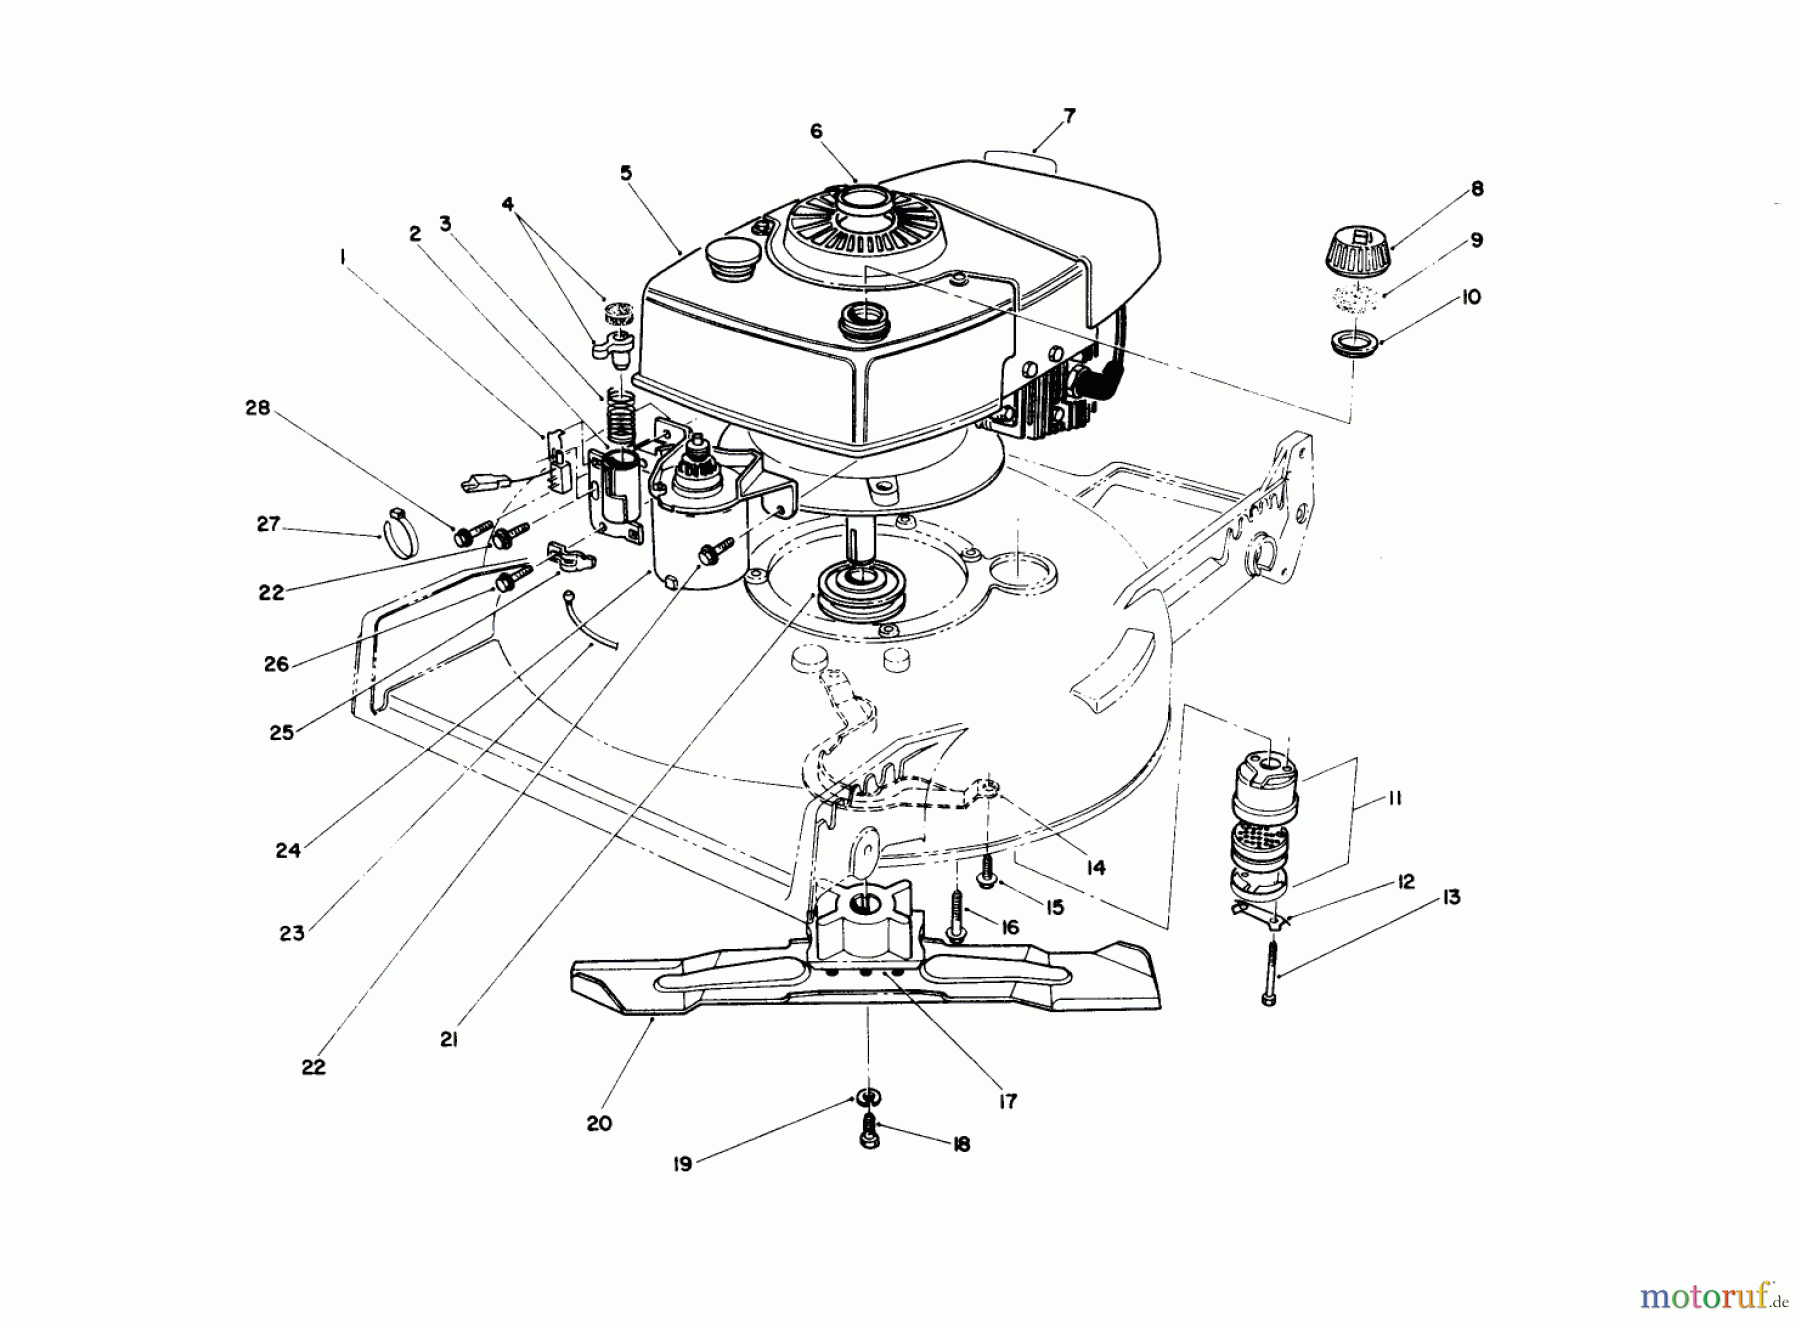  Toro Neu Mowers, Walk-Behind Seite 1 20677 - Toro Lawnmower, 1990 (0002102-0999999) ENGINE ASSEMBLY